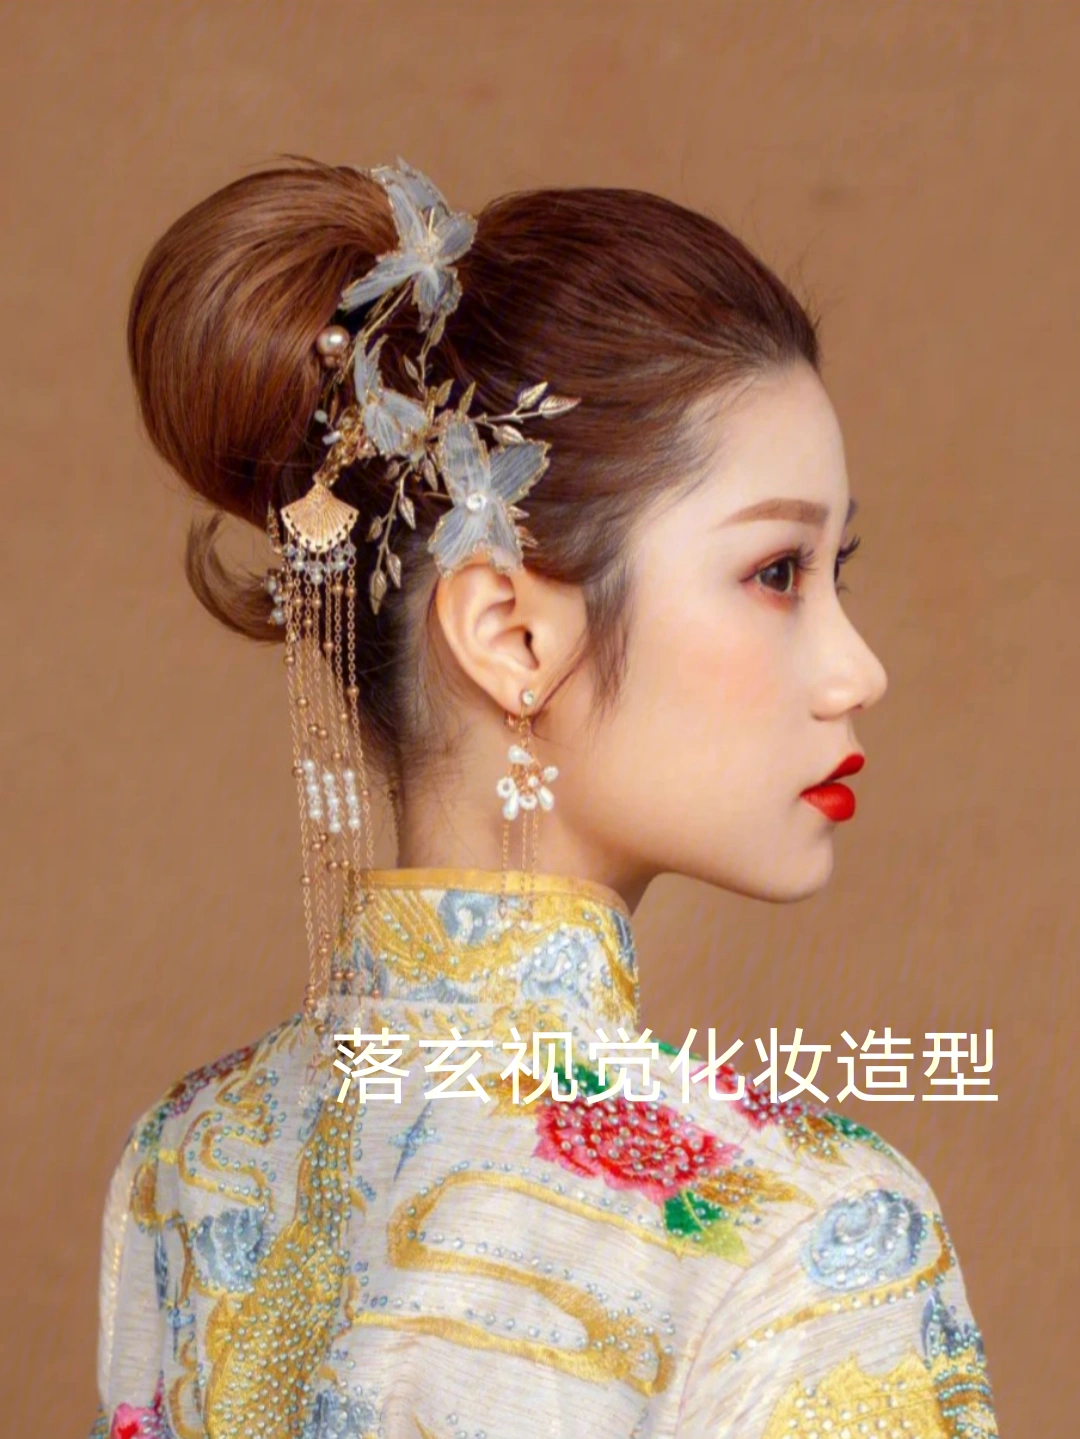 落玄视觉化妆造型之中式新娘造型欣赏,中式新娘造型也是结婚当天新娘